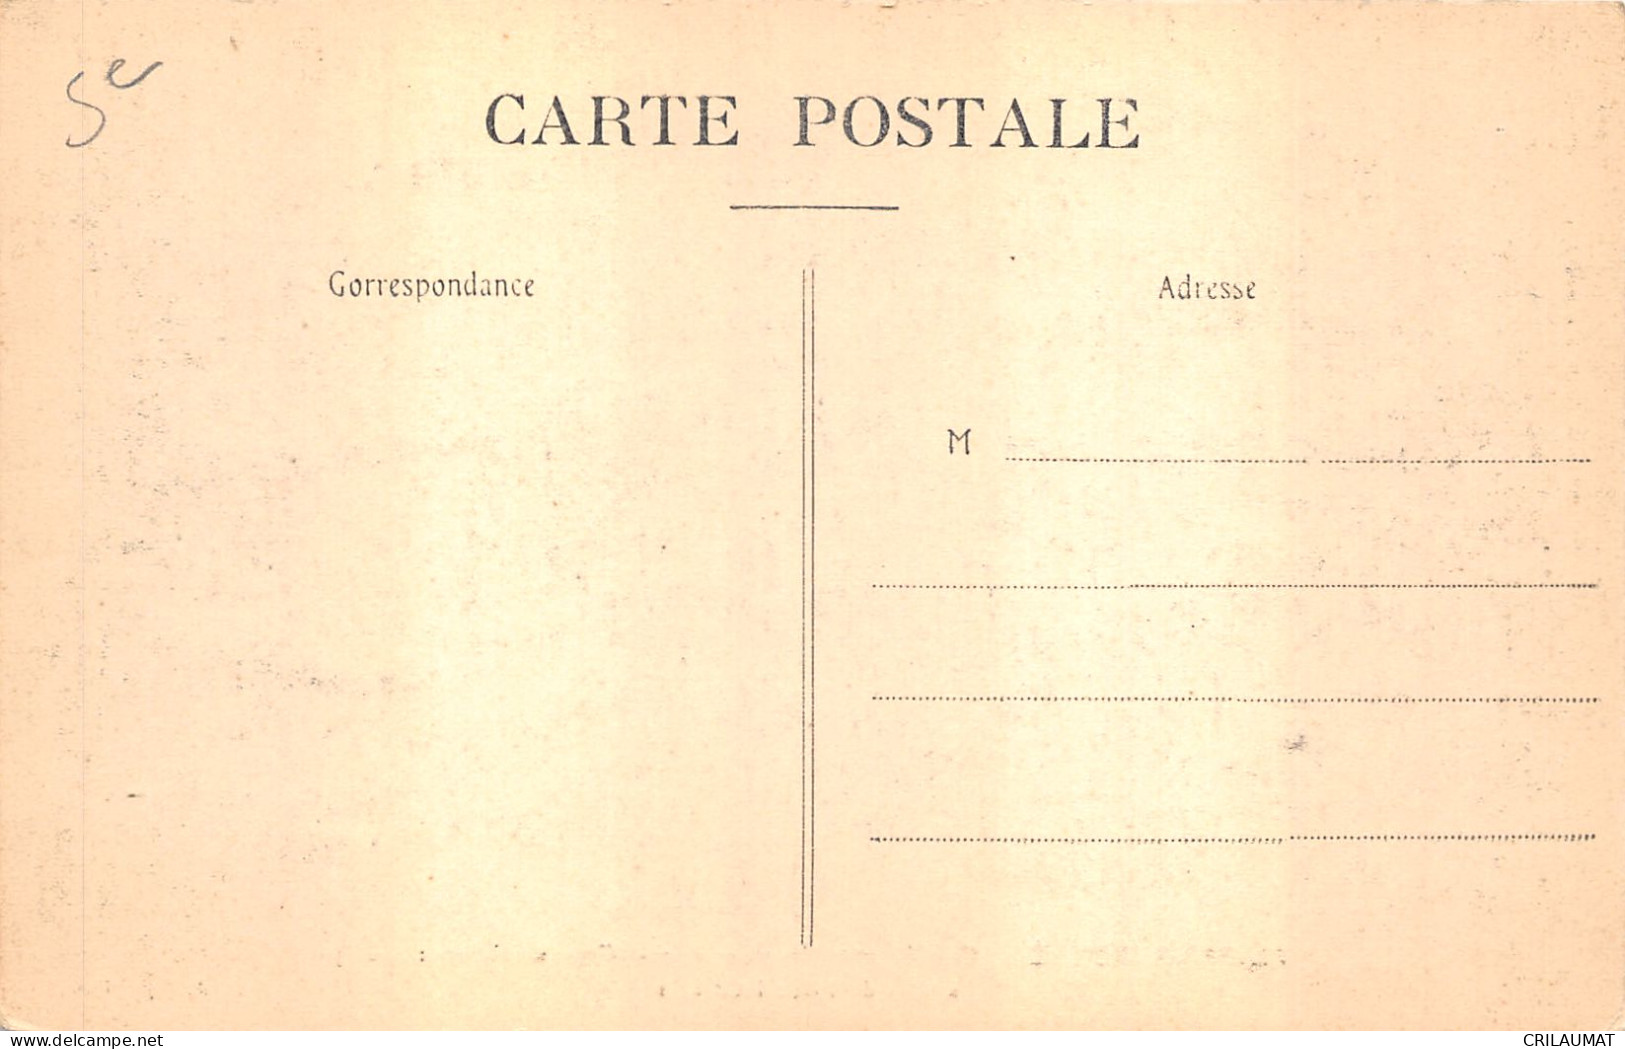 75-PARIS 5e-INONDATION 1910-PASSERELLE-N°6032-H/0085 - Arrondissement: 05